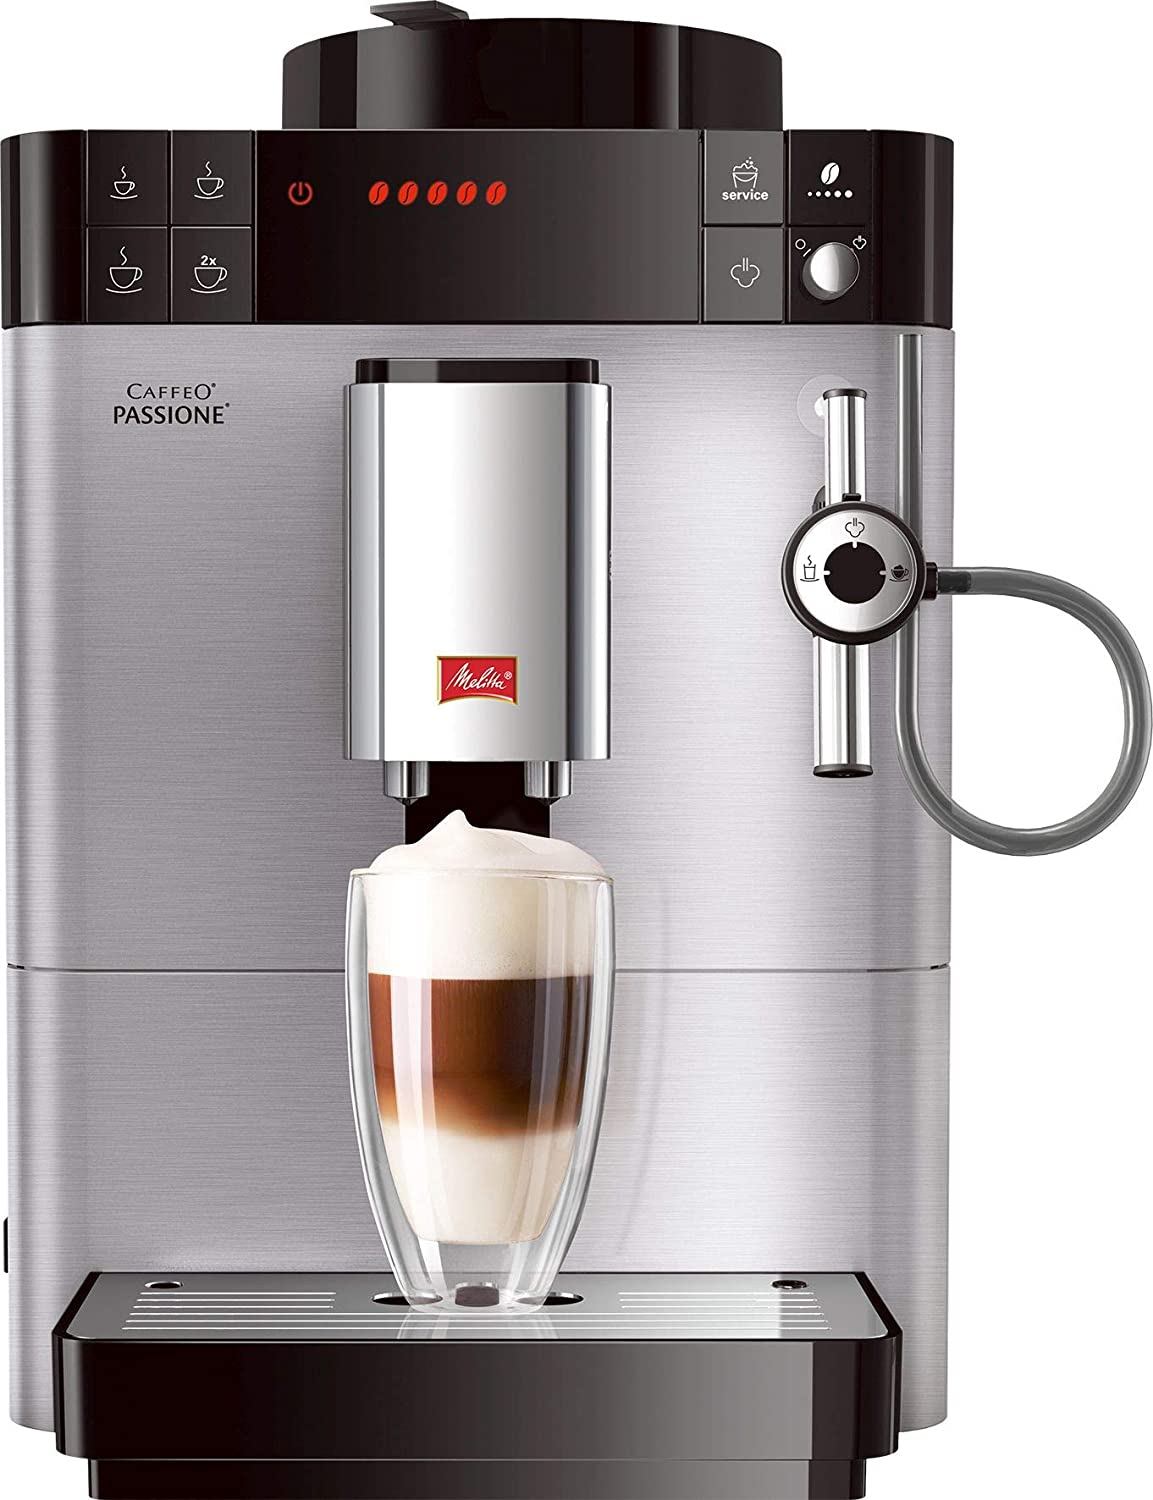 Melitta Caffeo Passione, Coffee machine